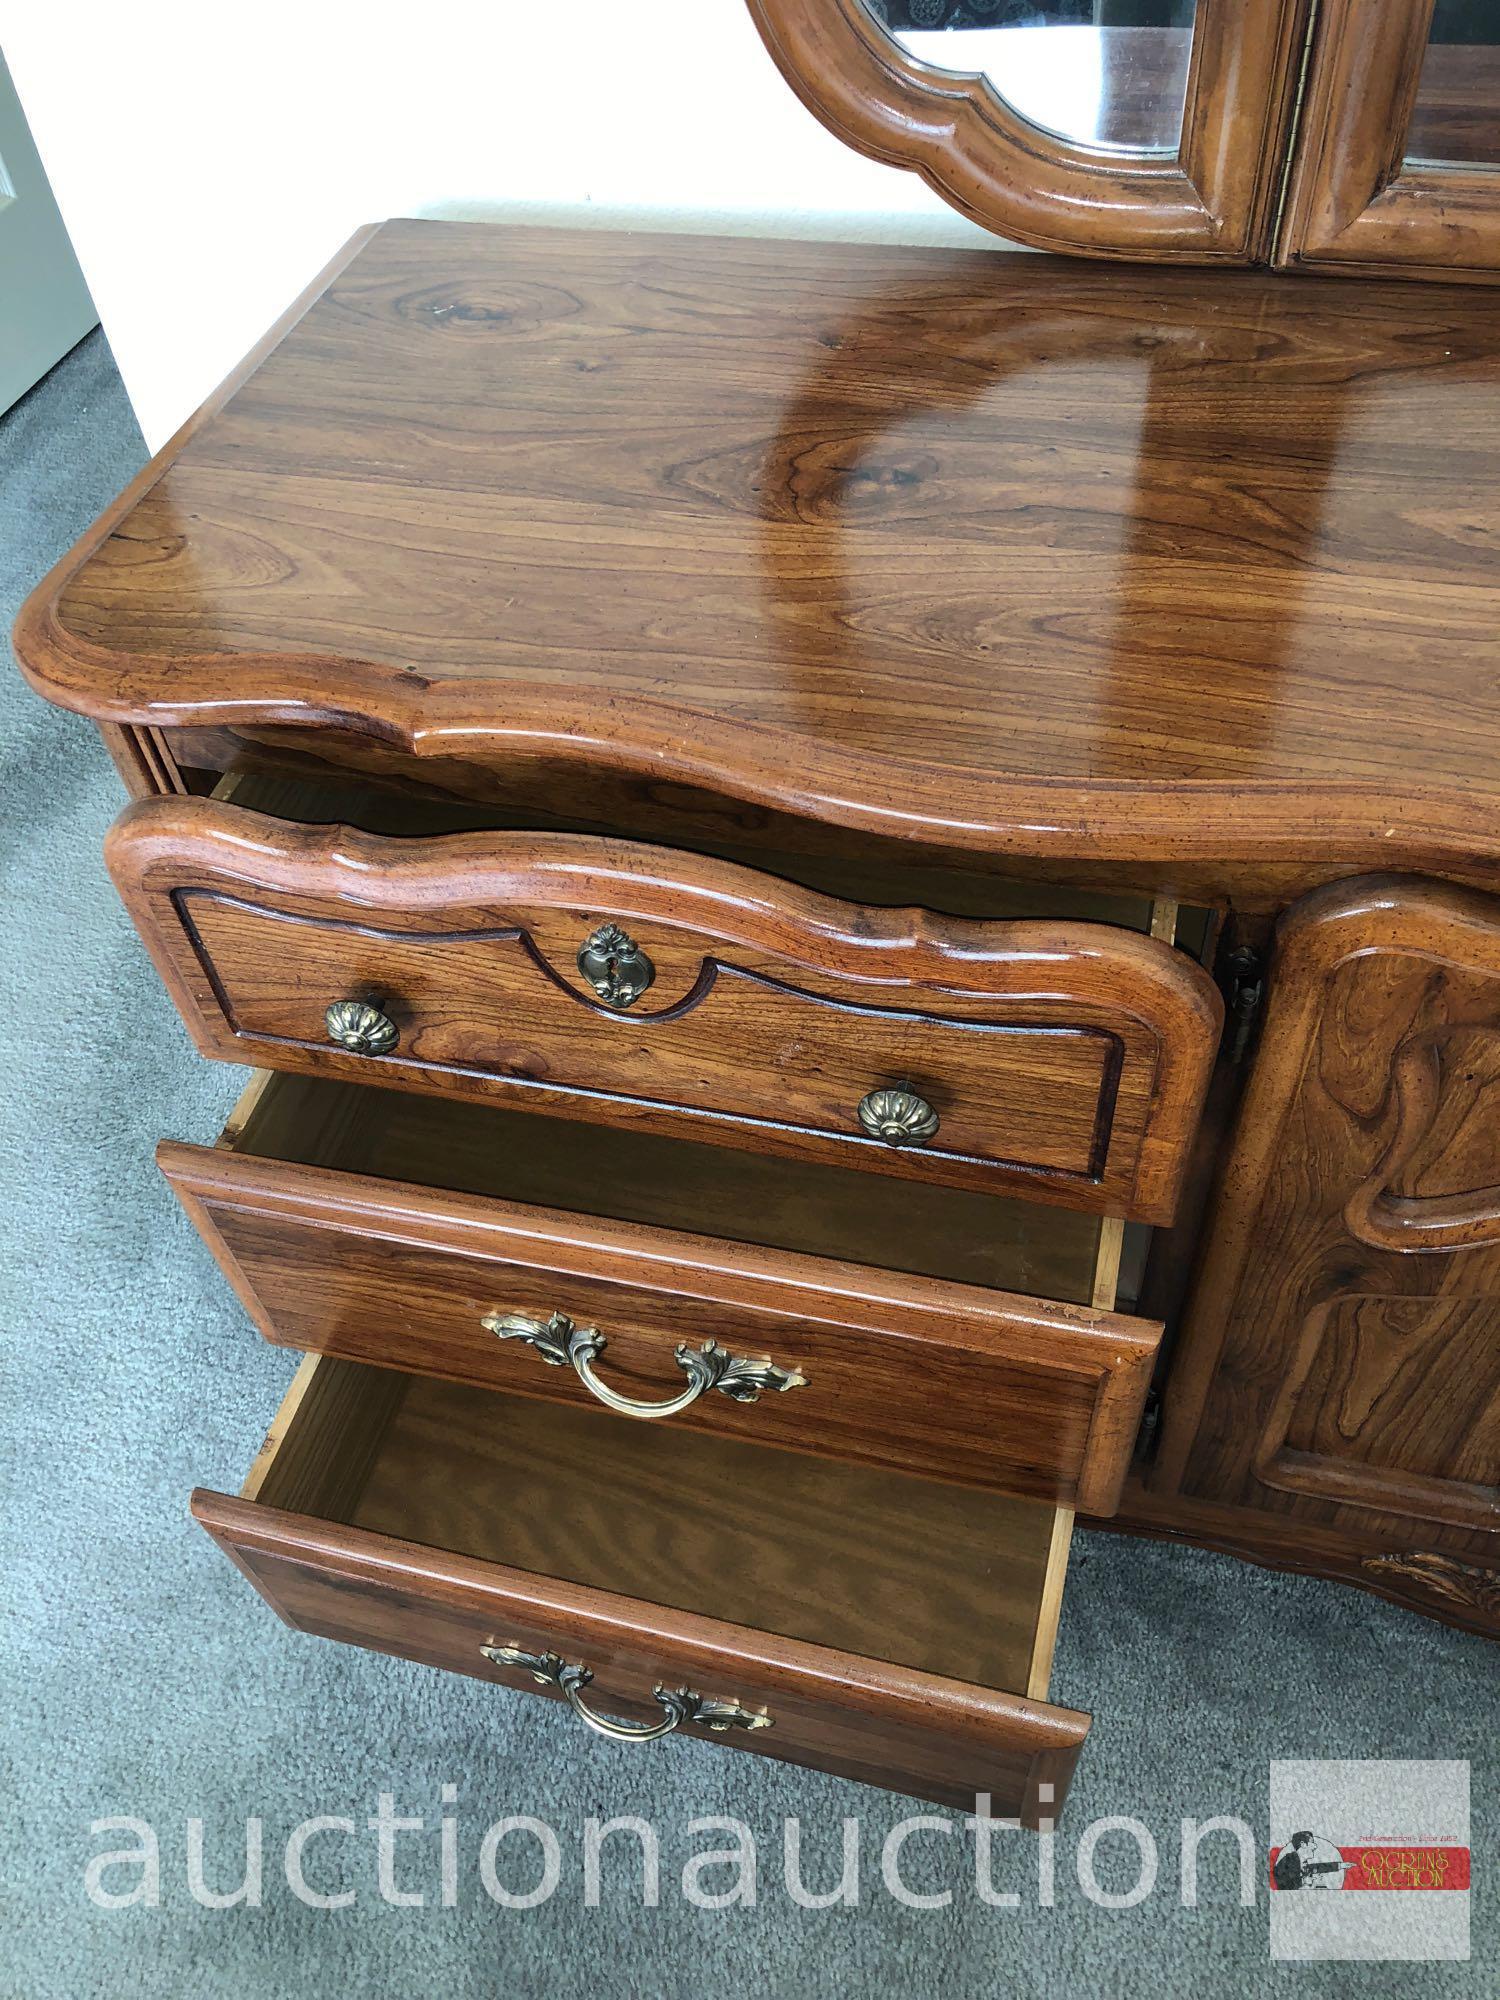 Furniture - Triple dresser, 9 drawers, triple dresser mirror, 65"wx72"hx17"d